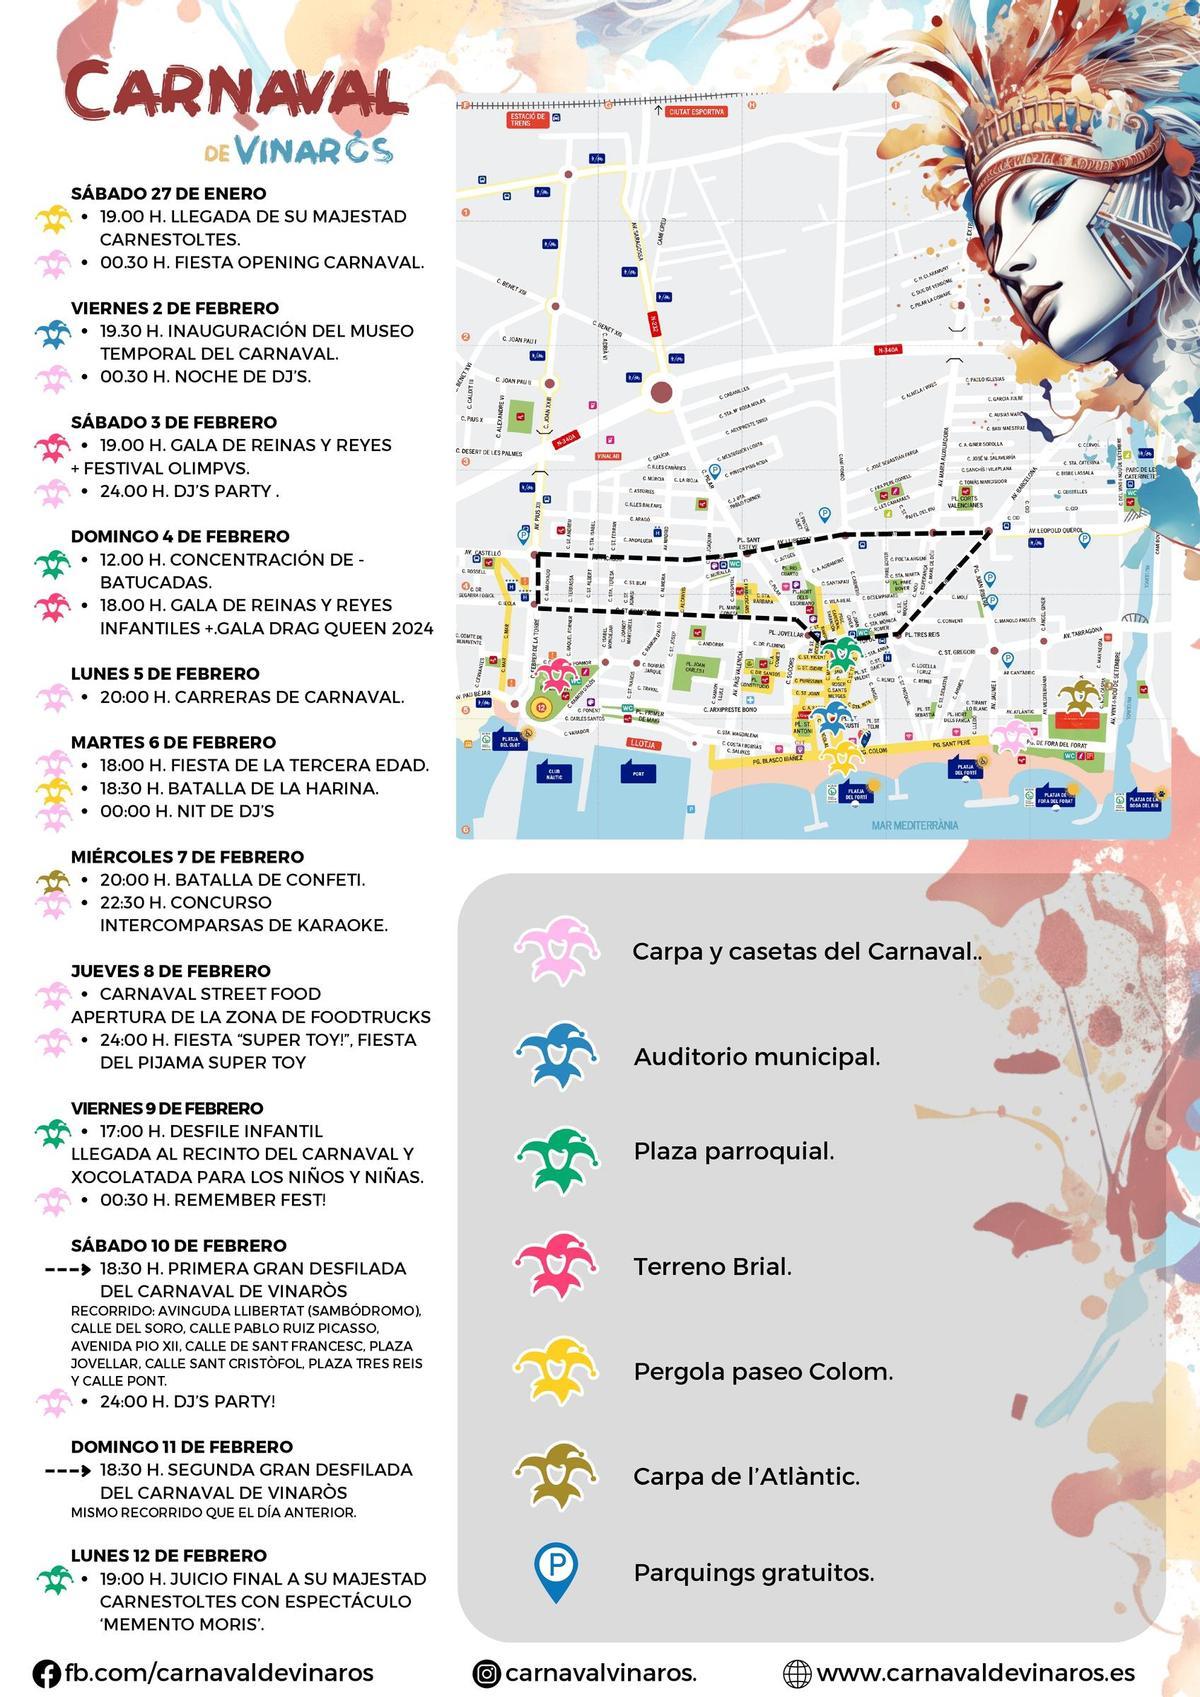 Mapa con las mejores ubicaciones para aparcar durante el Carnaval de Vinaròs.